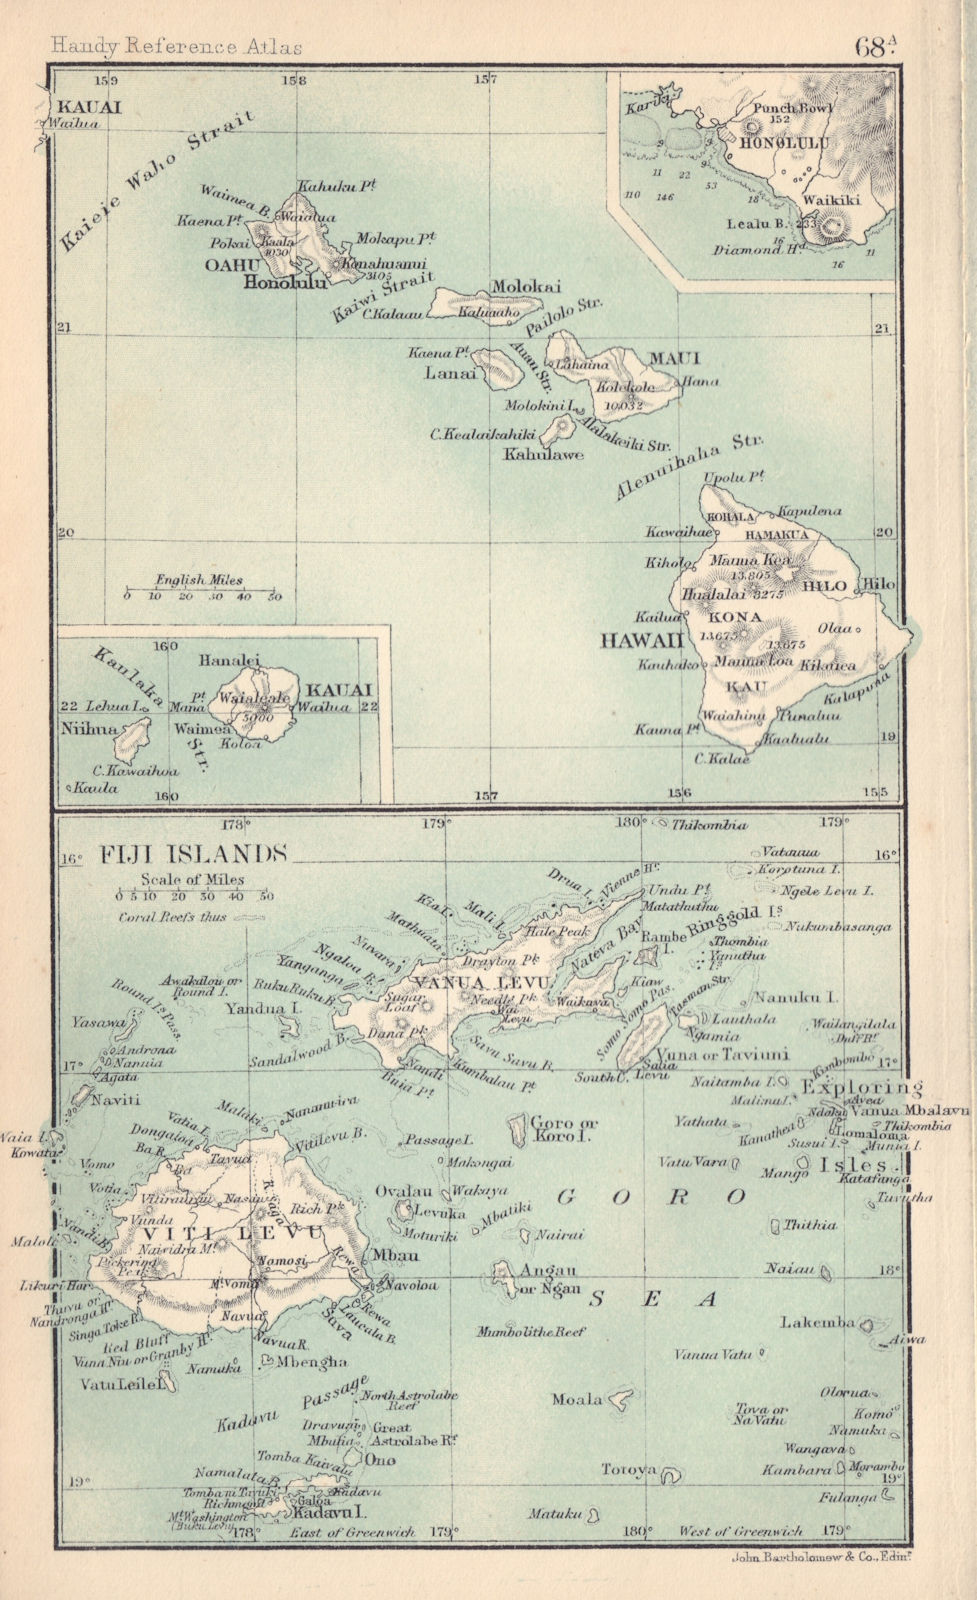 Associate Product Hawaii & the Fiji Islands. Kauai. Honolulu. BARTHOLOMEW 1898 old antique map